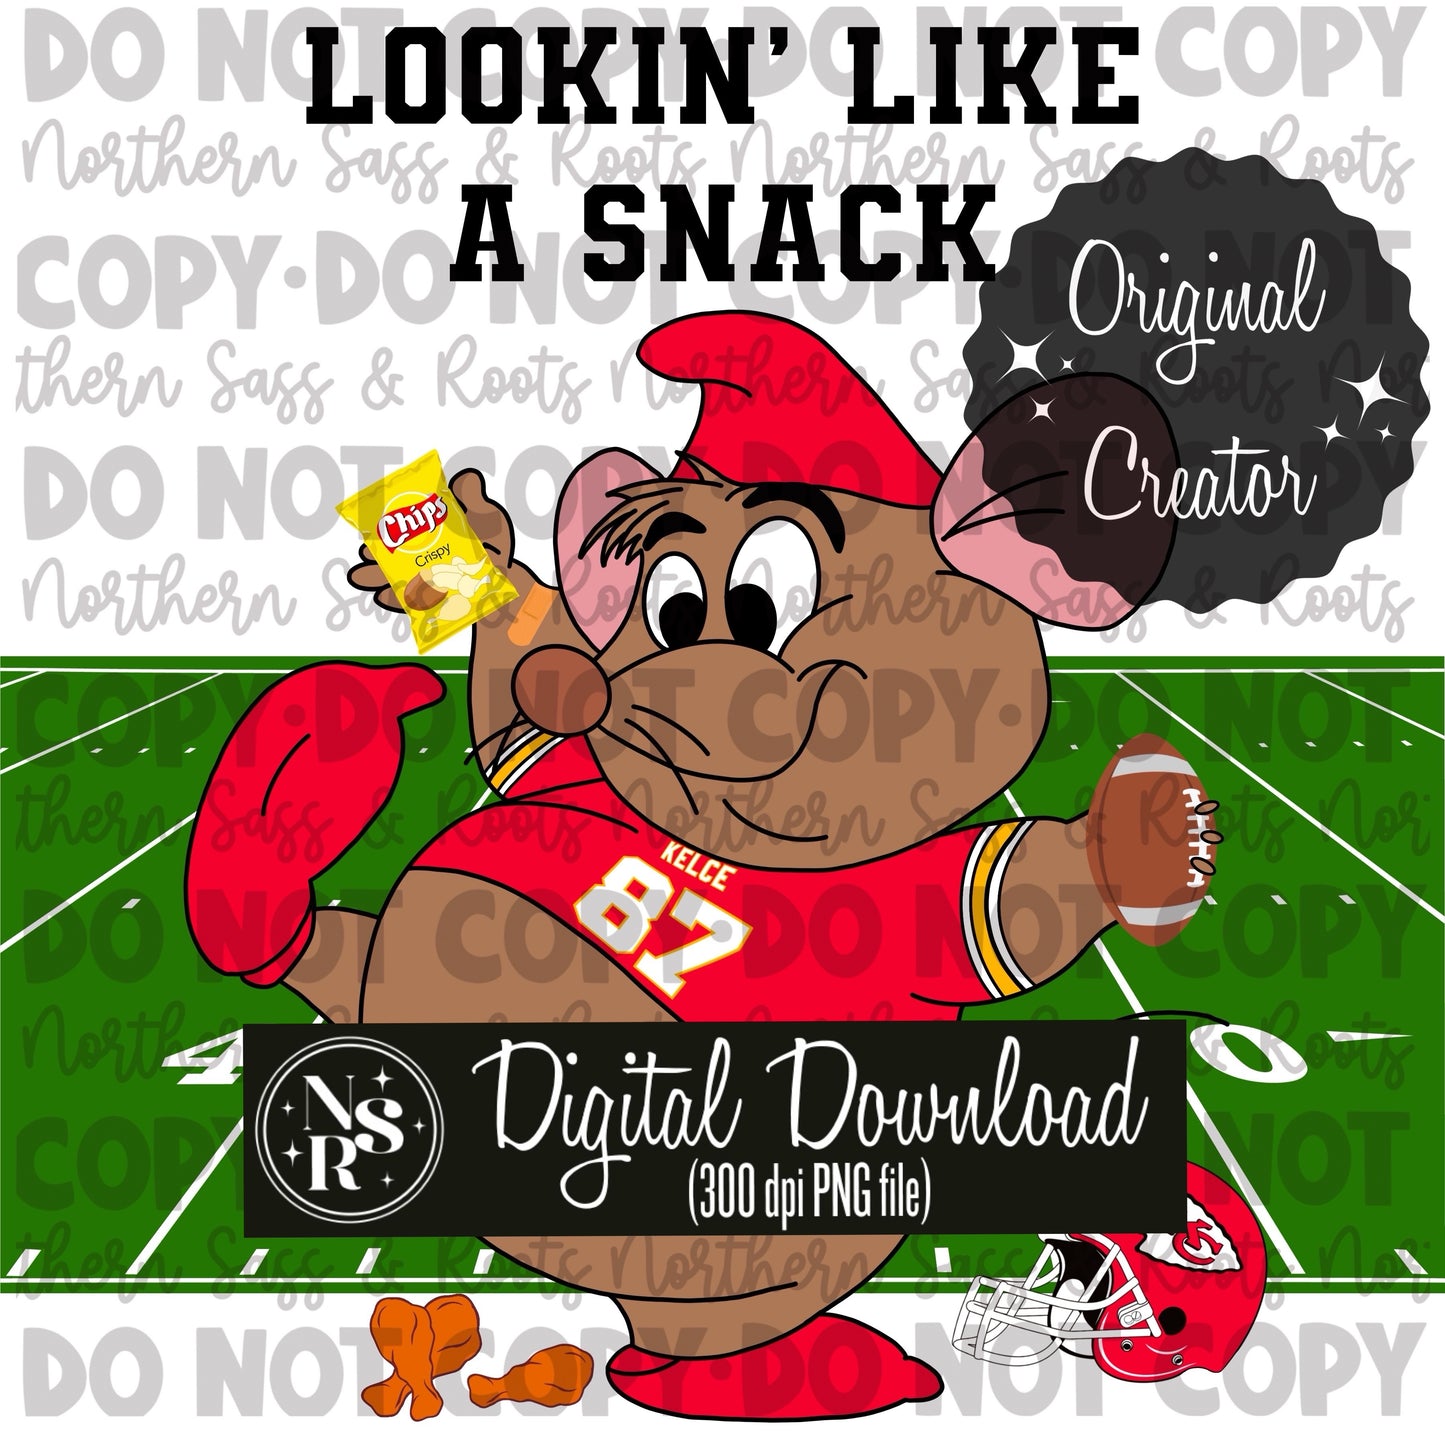 Lookin Like A Snack V.1 (Gus Kelce): Digital Download